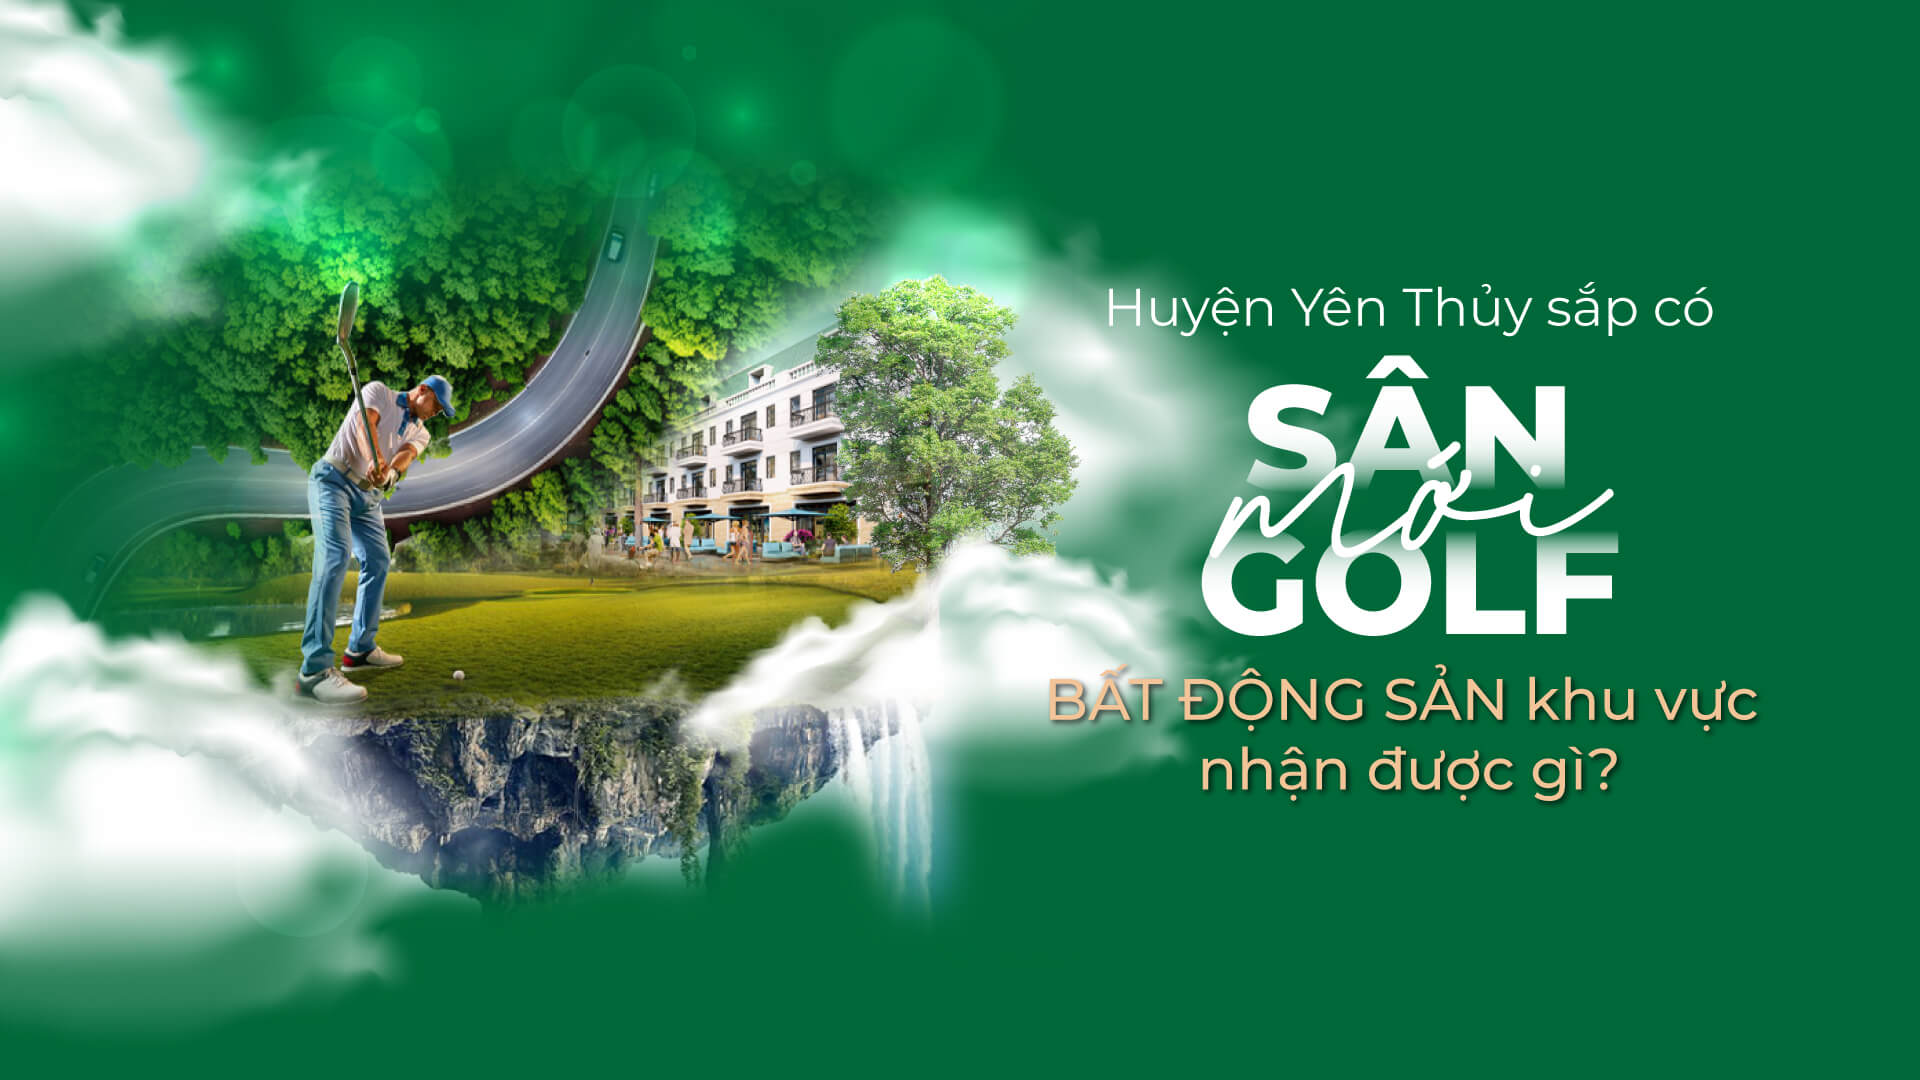 Huyện Yên Thủy sắp có sân golf mới: Bất động sản khu vực nhận được gì?